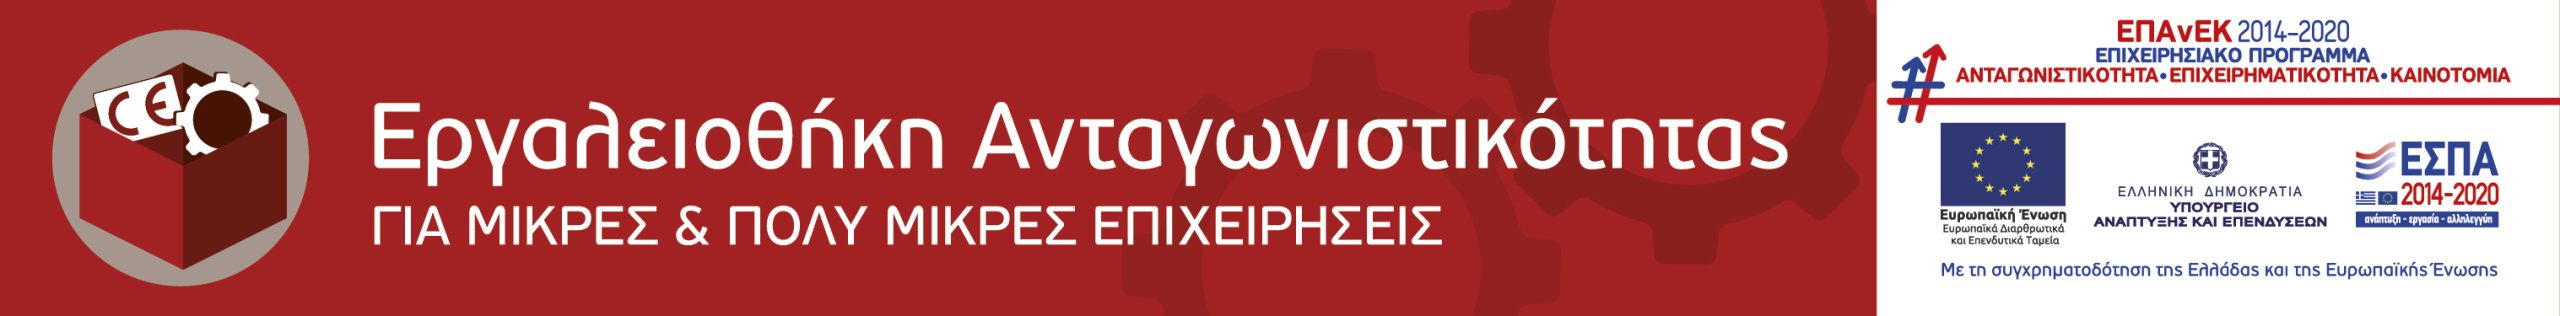 banner εργαλειοθήκη ανταγωνιστικότητας ΕΣΠΑ